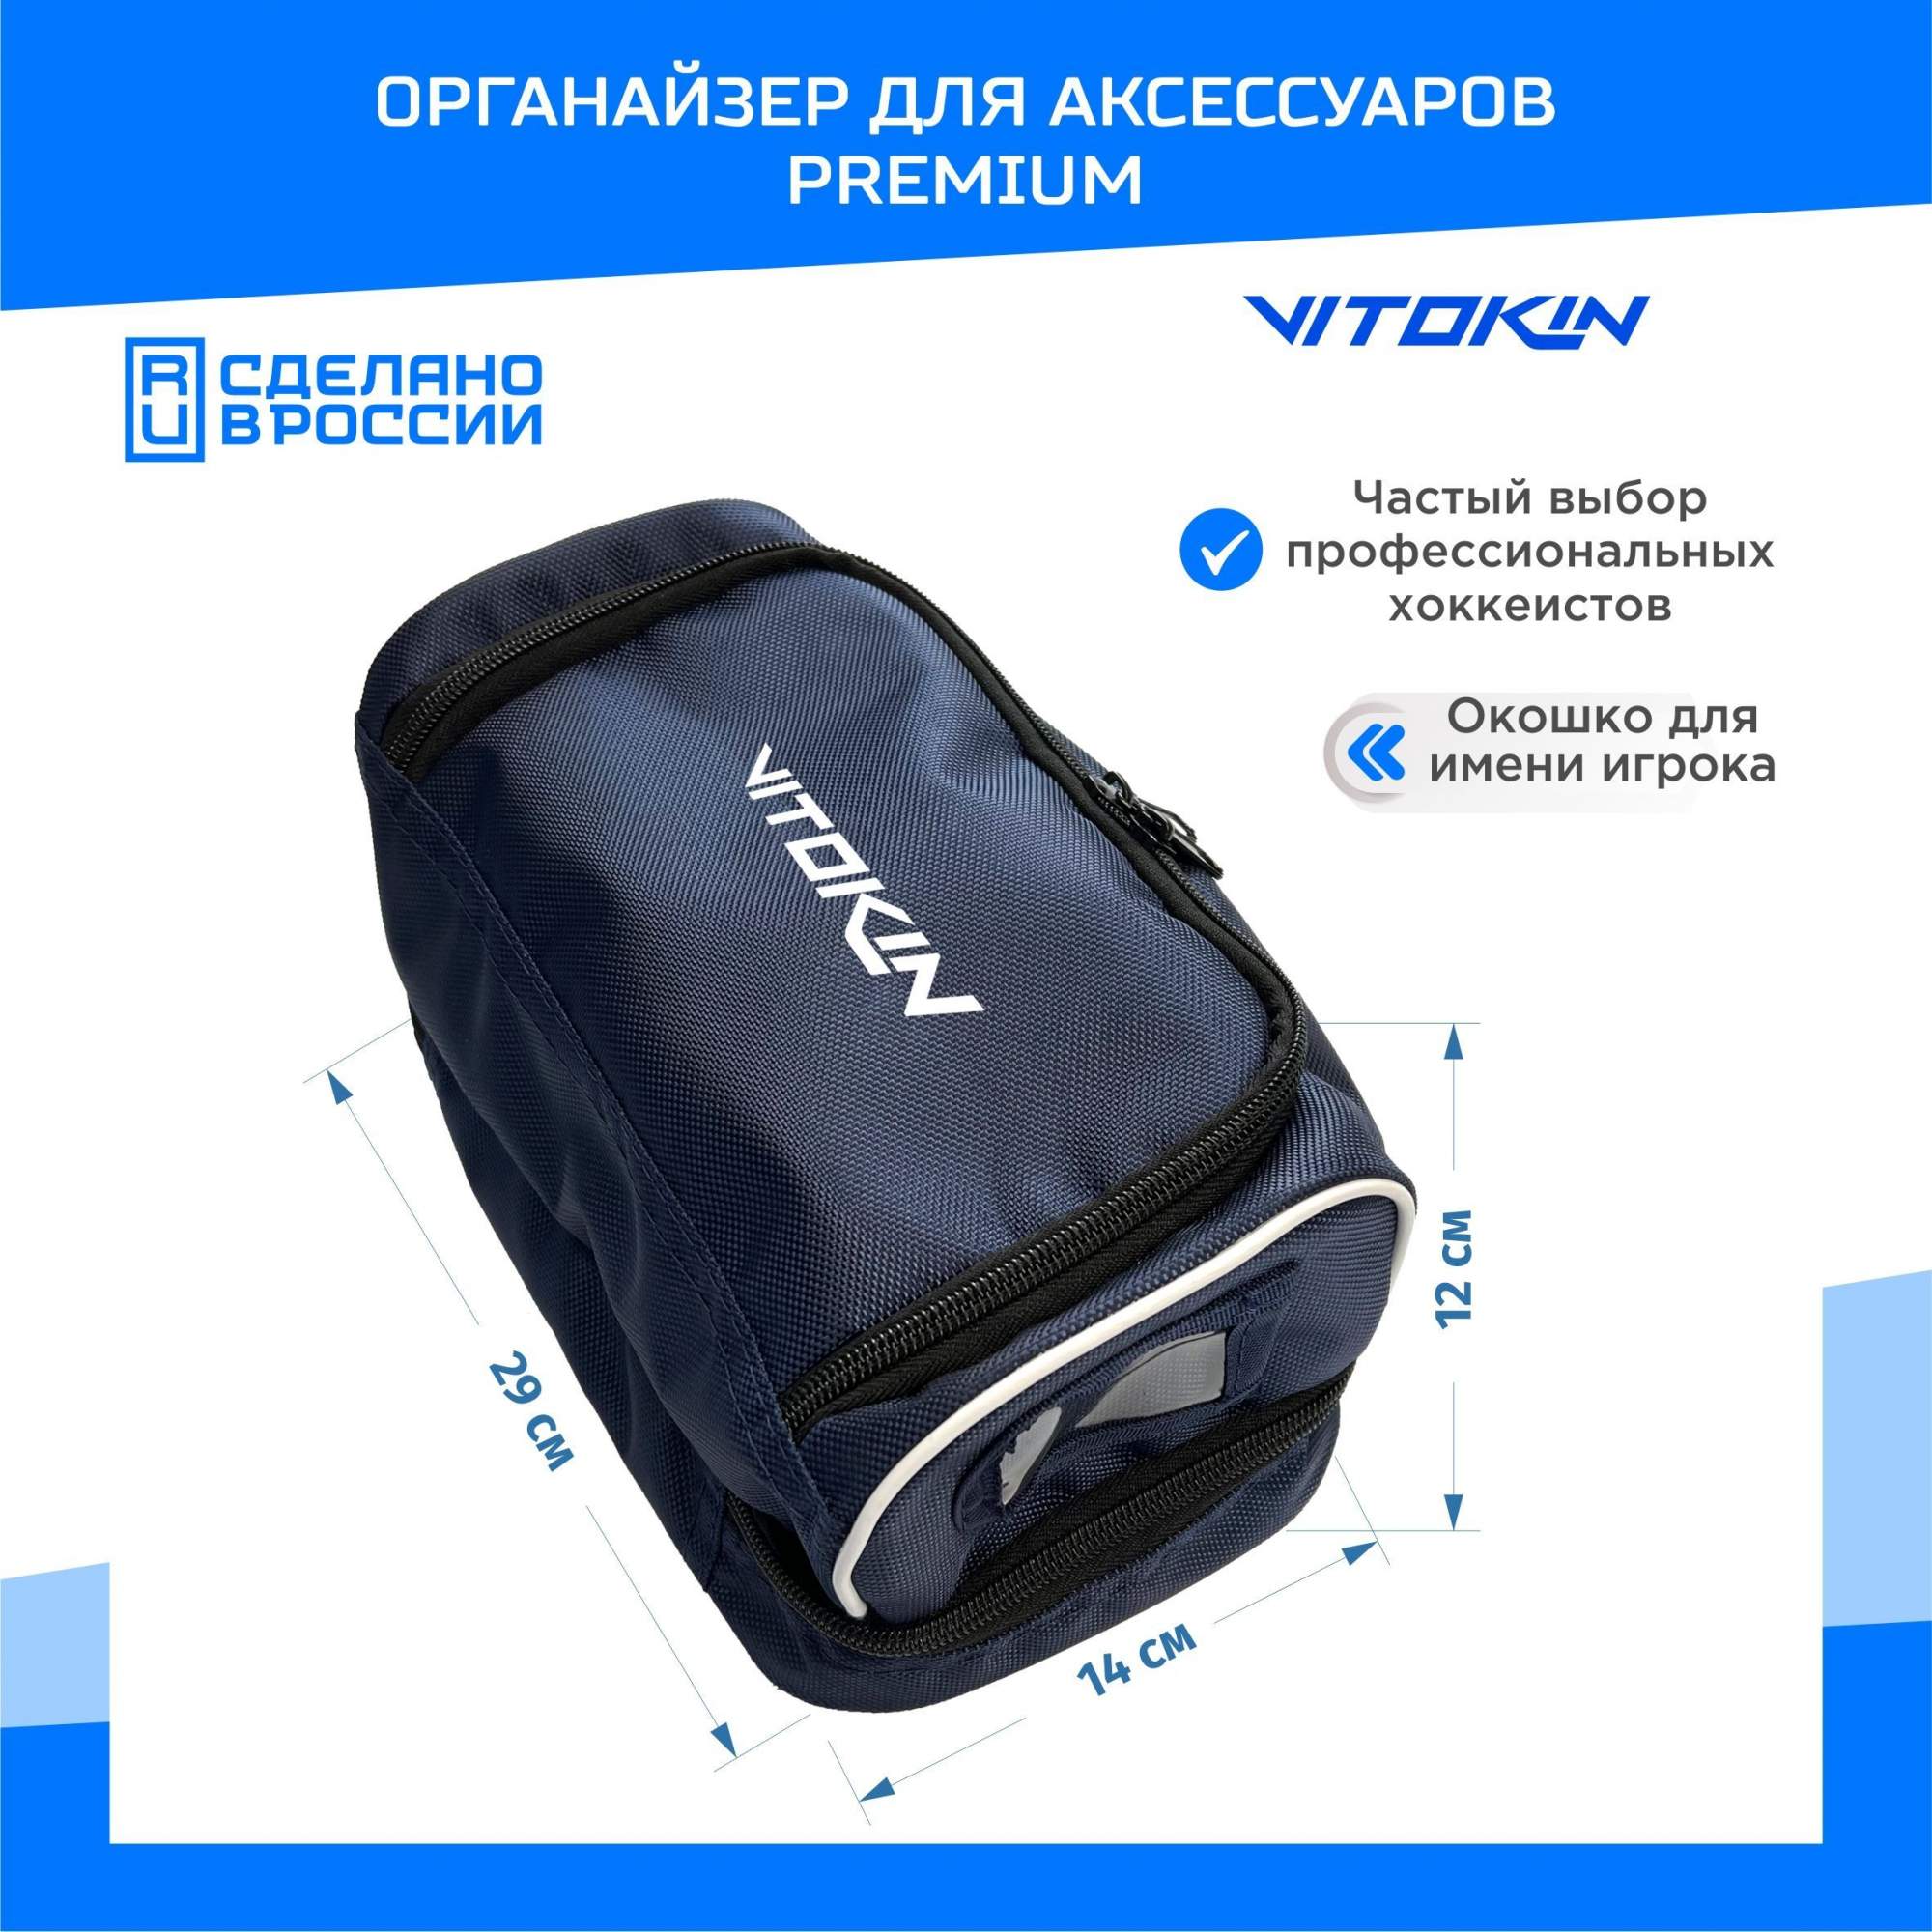 Хоккейная сумка органайзер VITOKIN PREMIUM для аксессуаров, синяя